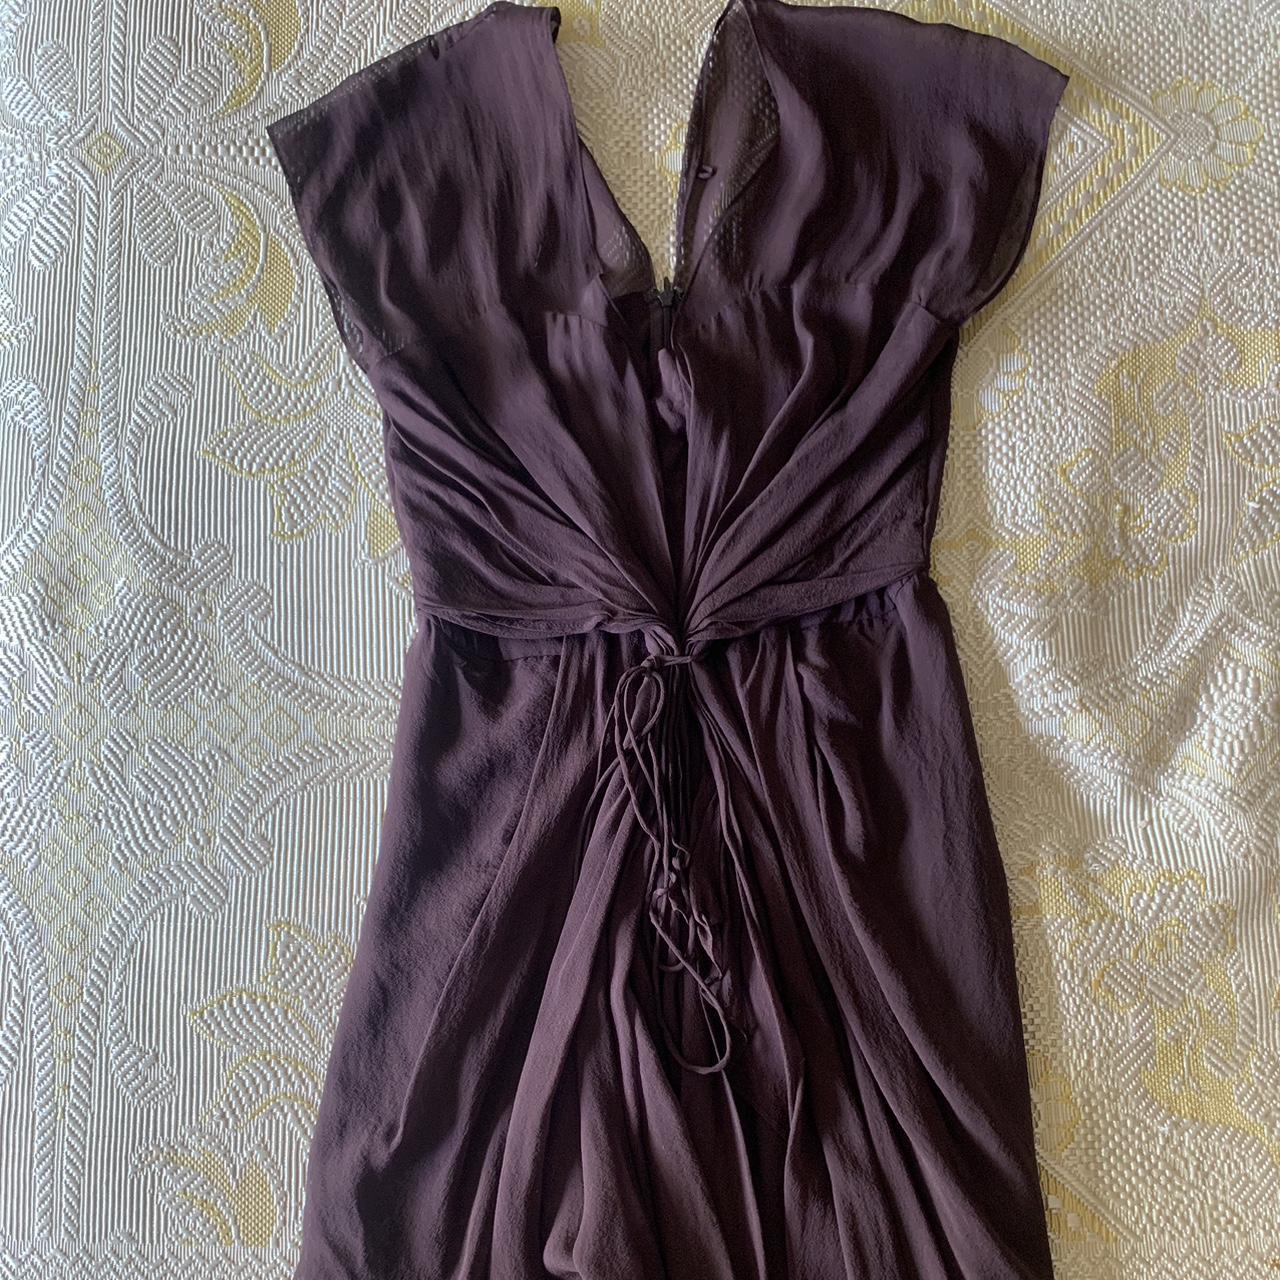 Diane von Furstenberg Women's Burgundy and Brown Dress